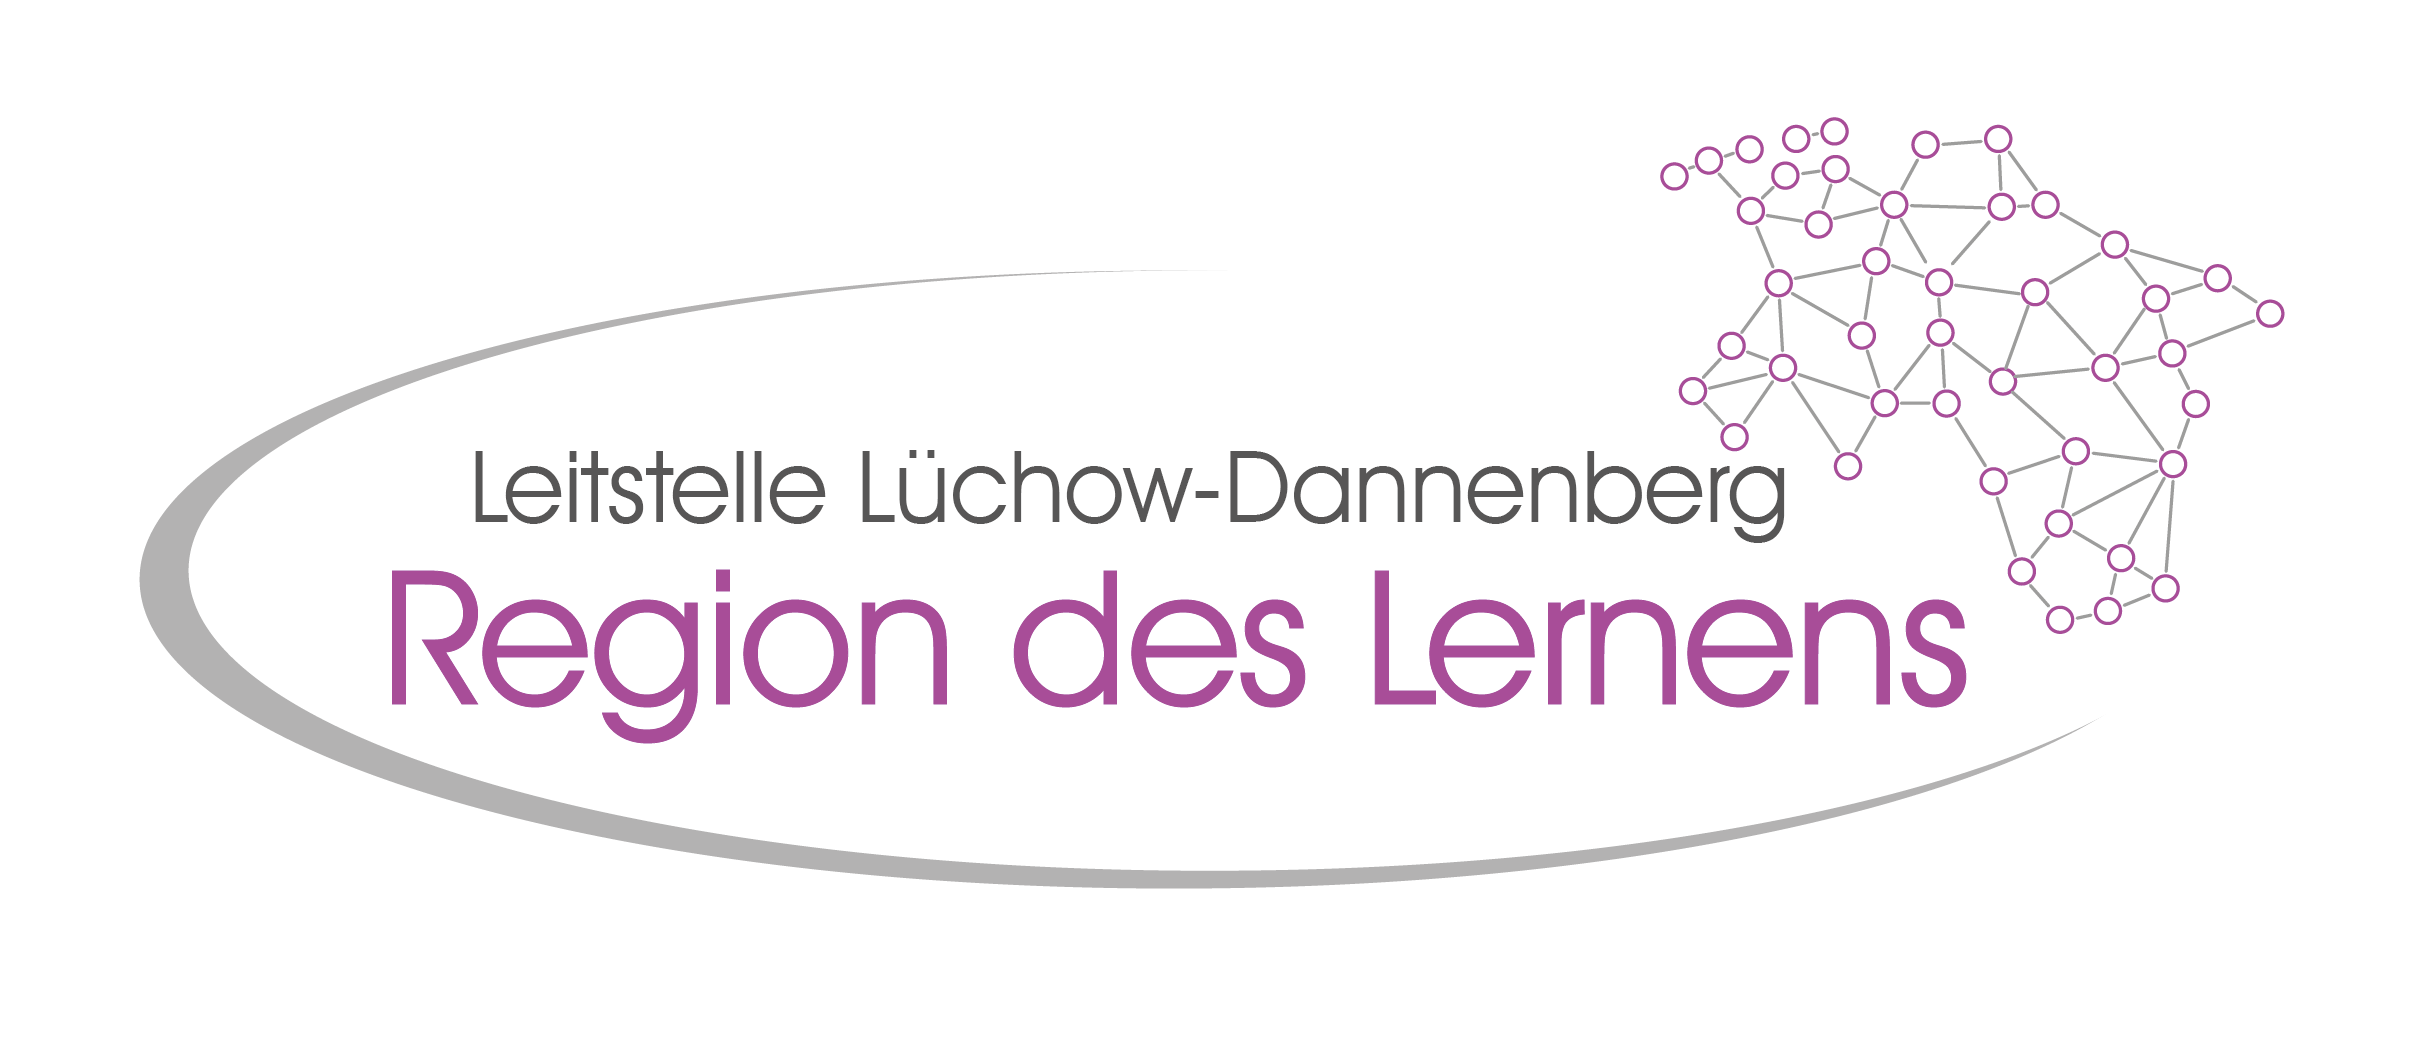 RDL LS Luechow Dannenberg